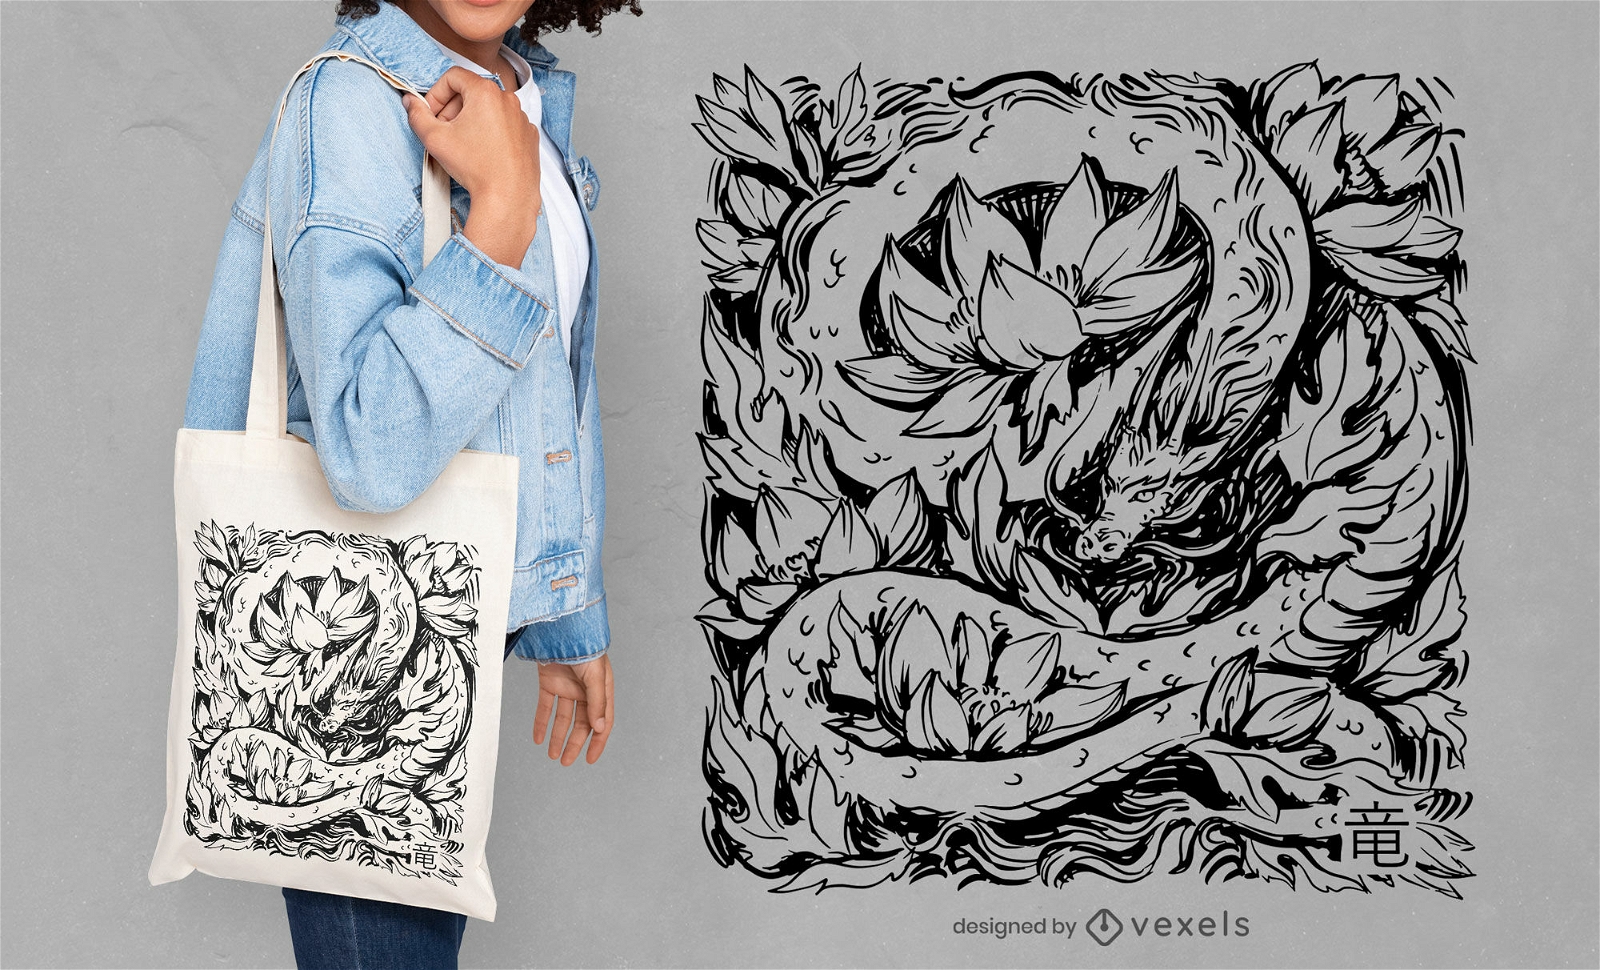 Diseño de tote bag dragón y flores.